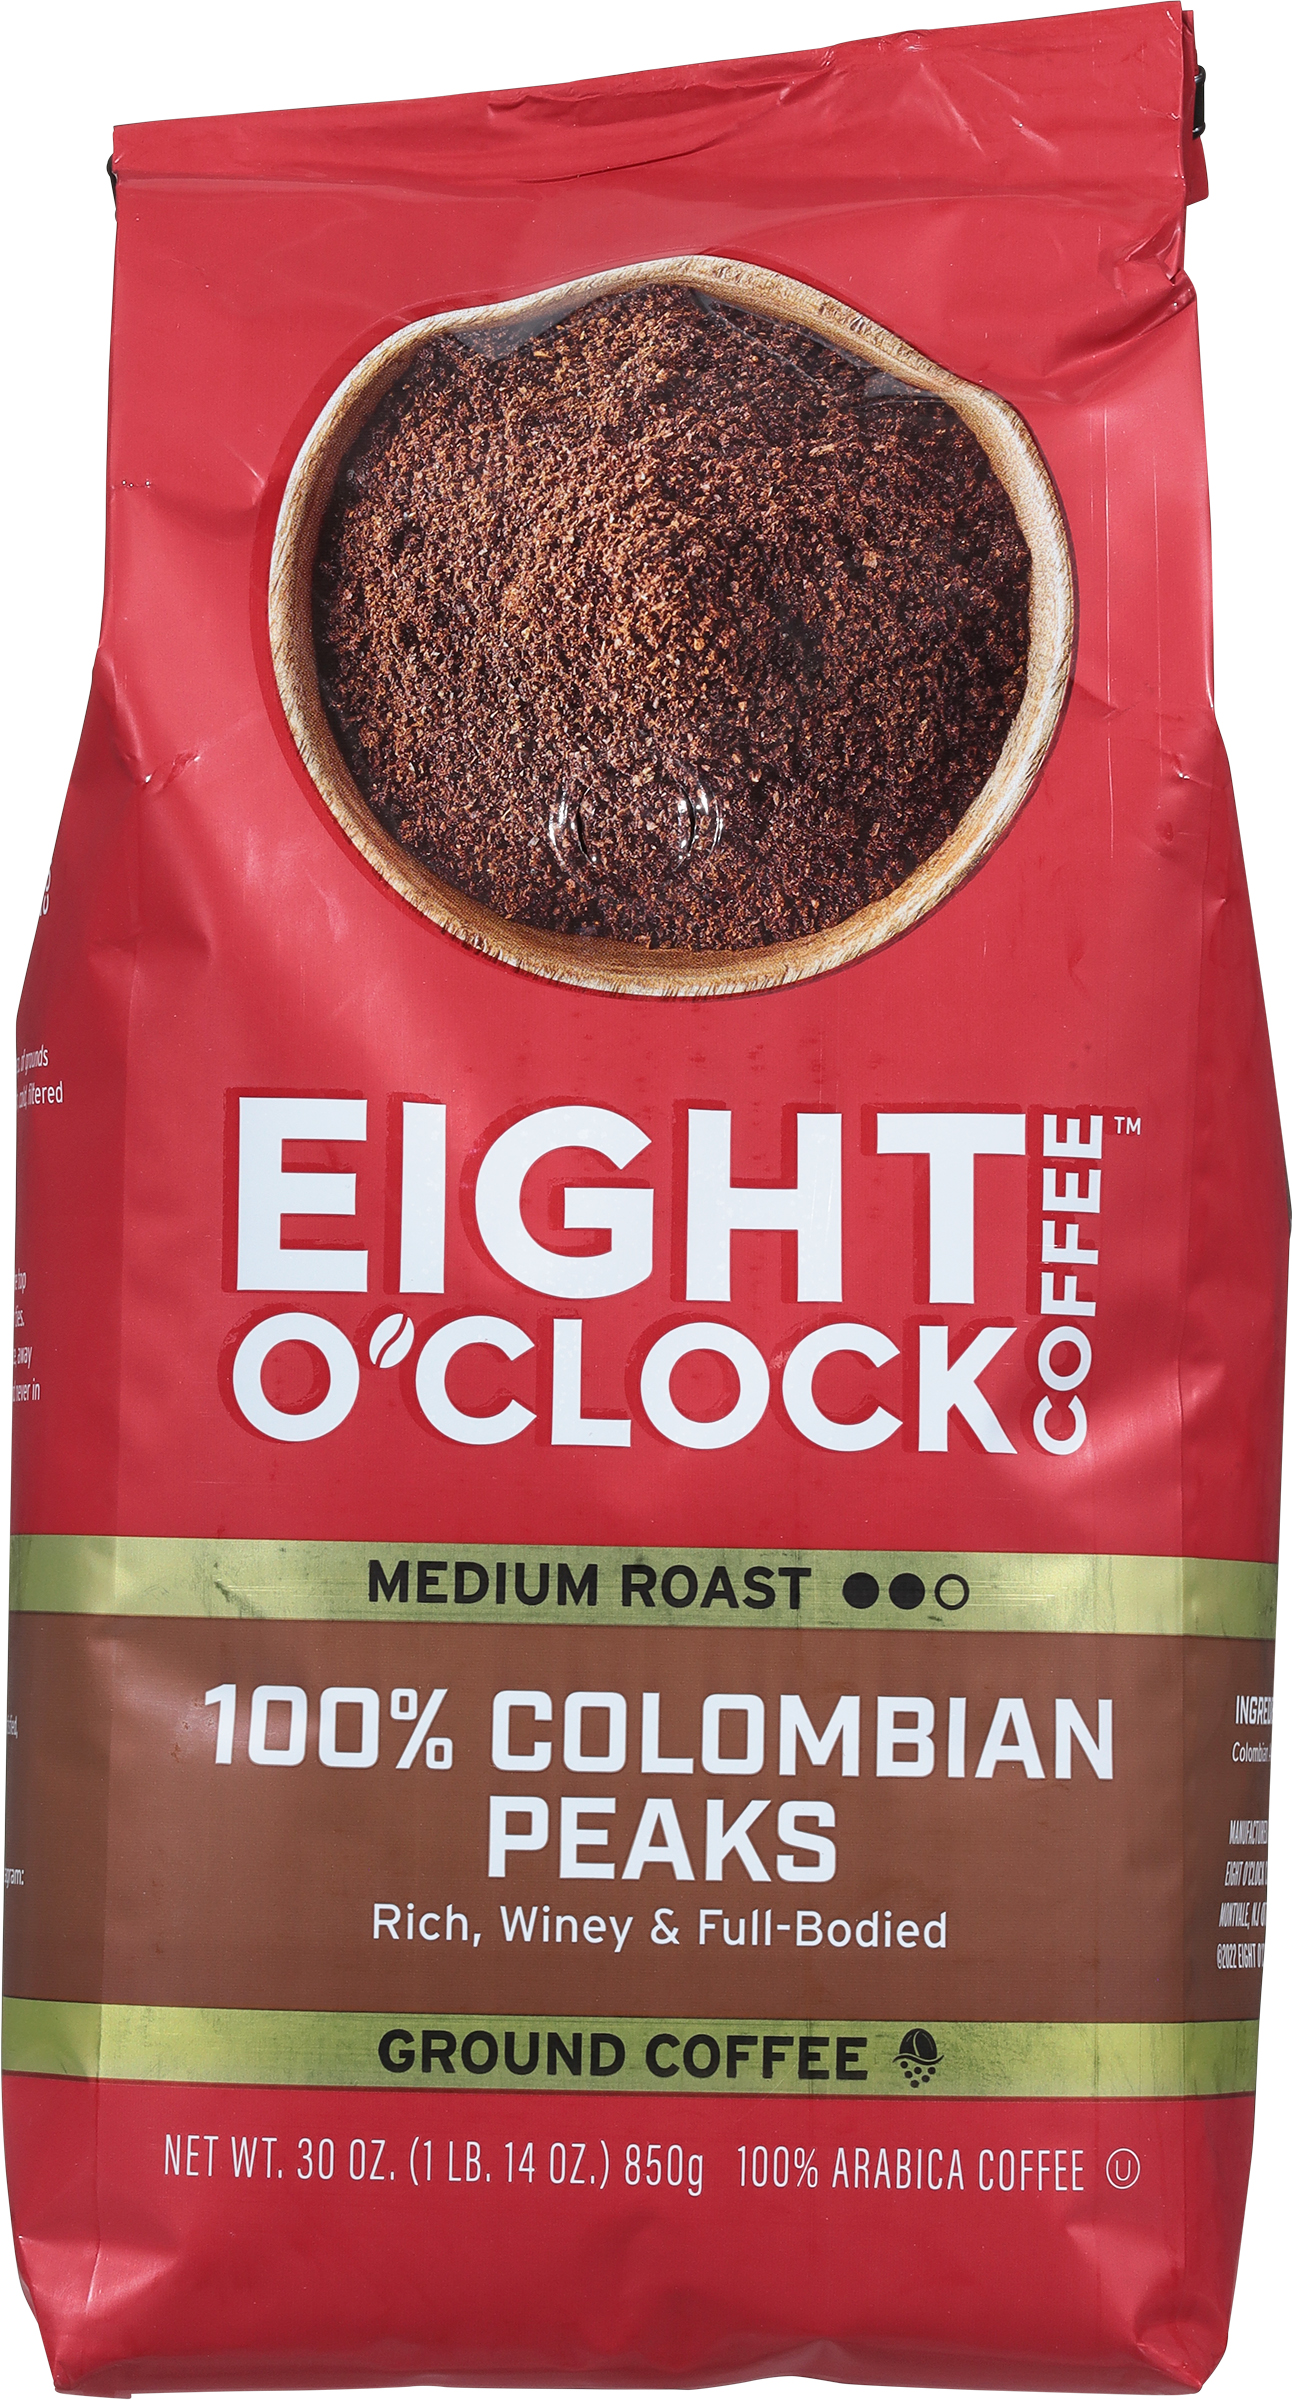 Eight O'Clock 100% Colombian Peaks Medium Roast Ground Coffee, 30 Oz, Bag - image 3 of 3